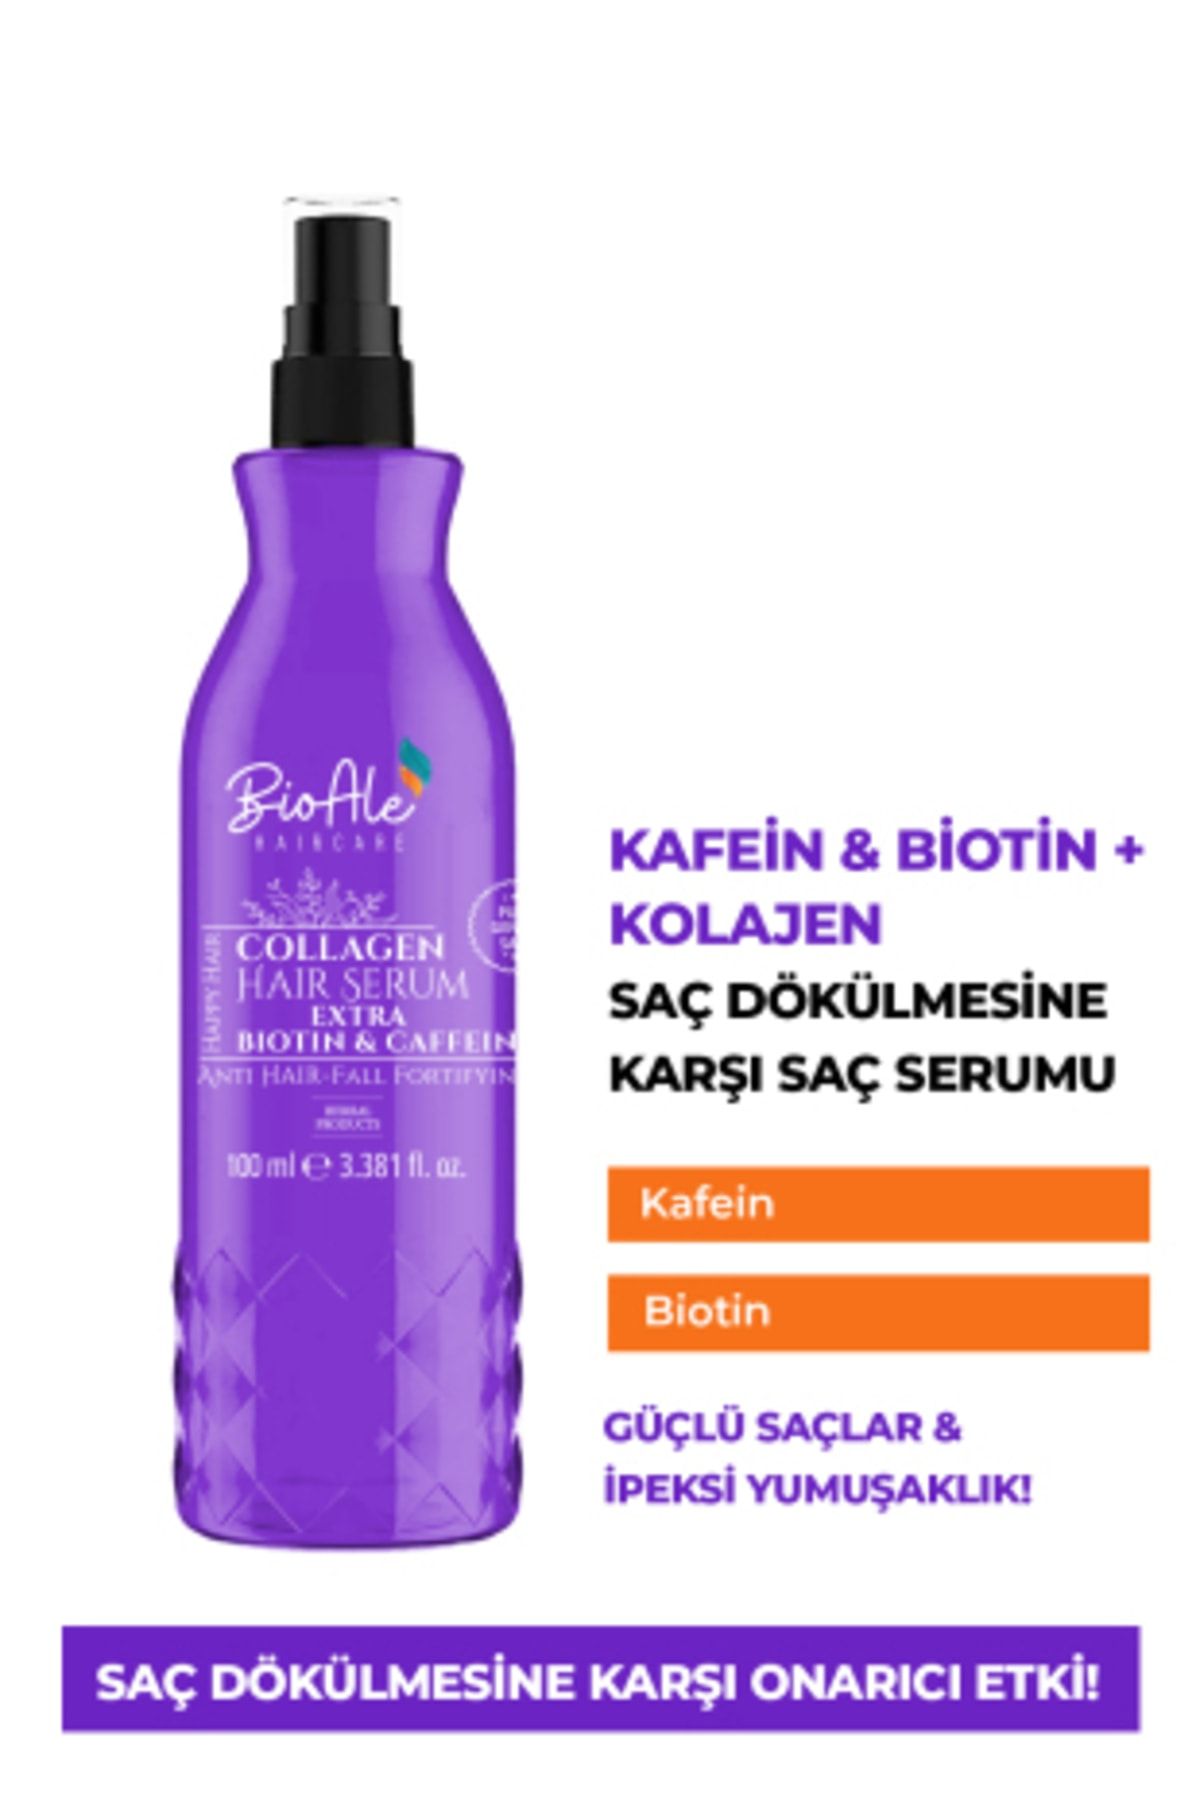 BioAle Haircare Saç Dökülmelerine Karşı Güçlendirici Serum Kolajen+Biotin+ kafein 100 ml